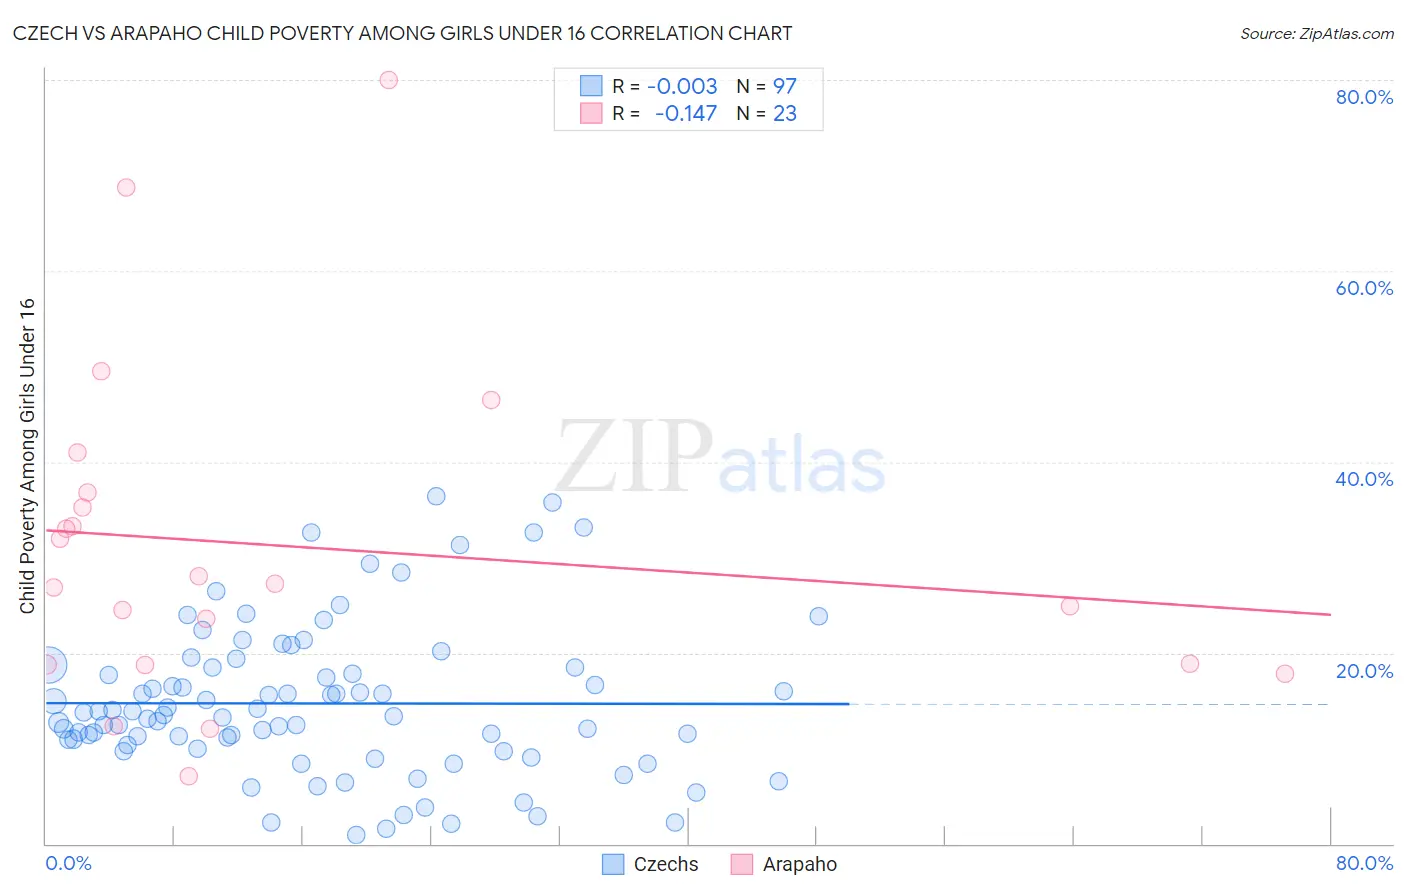 Czech vs Arapaho Child Poverty Among Girls Under 16